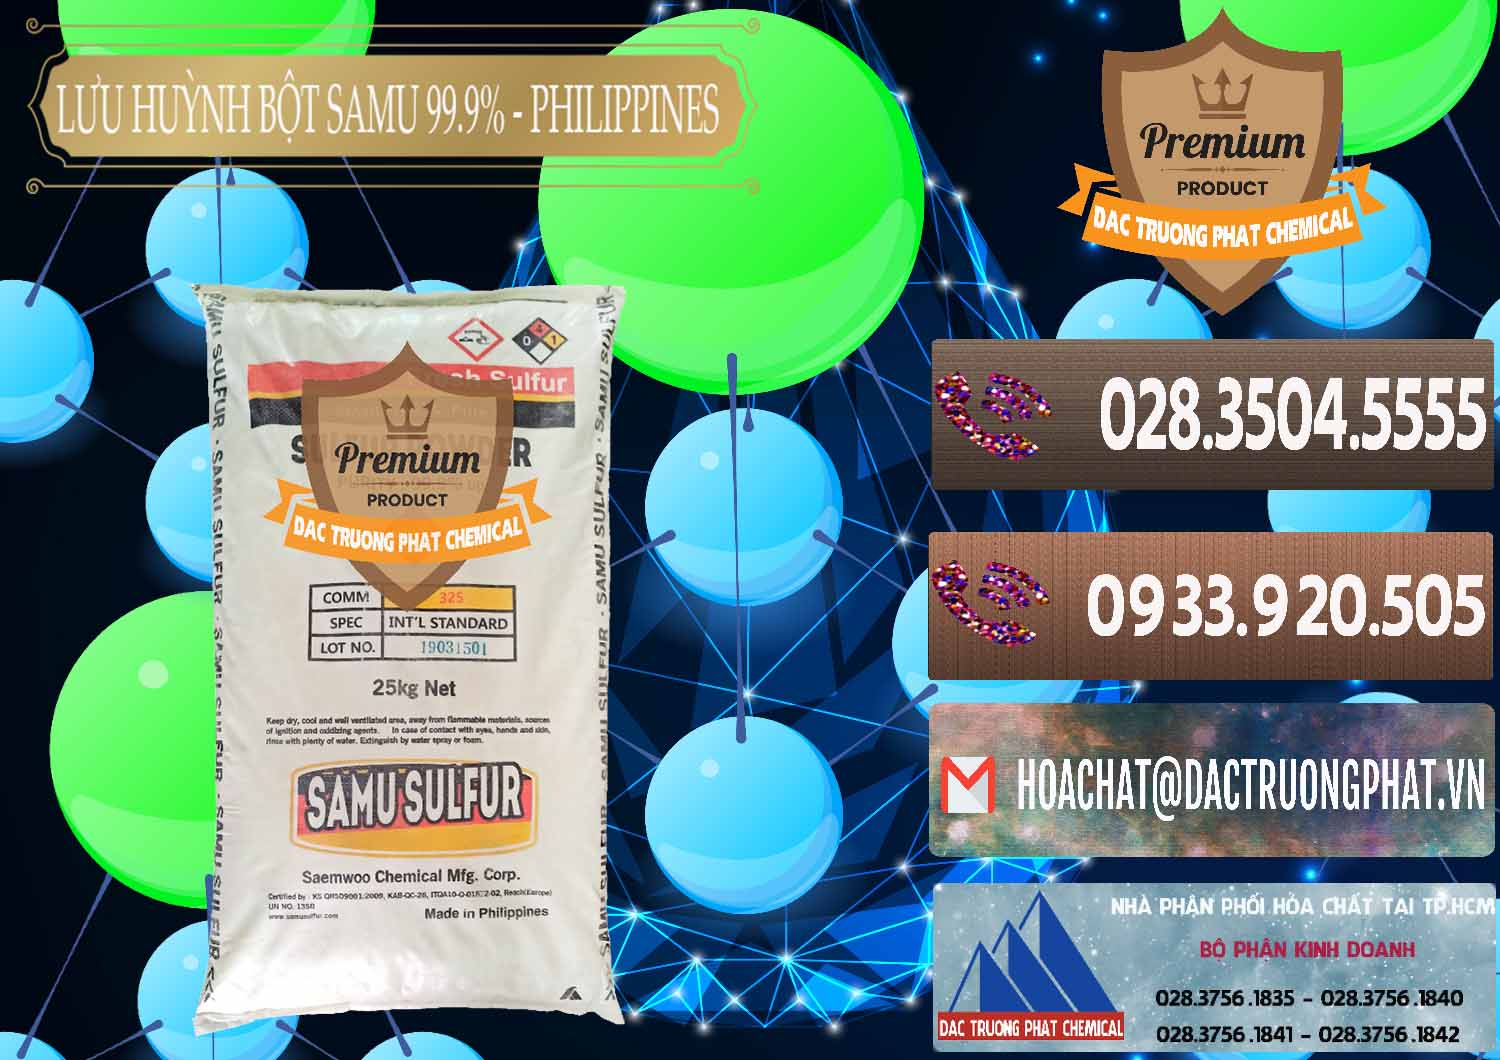 Cty chuyên cung cấp và bán Lưu huỳnh Bột - Sulfur Powder Samu Philippines - 0201 - Phân phối - cung cấp hóa chất tại TP.HCM - hoachatviet.net